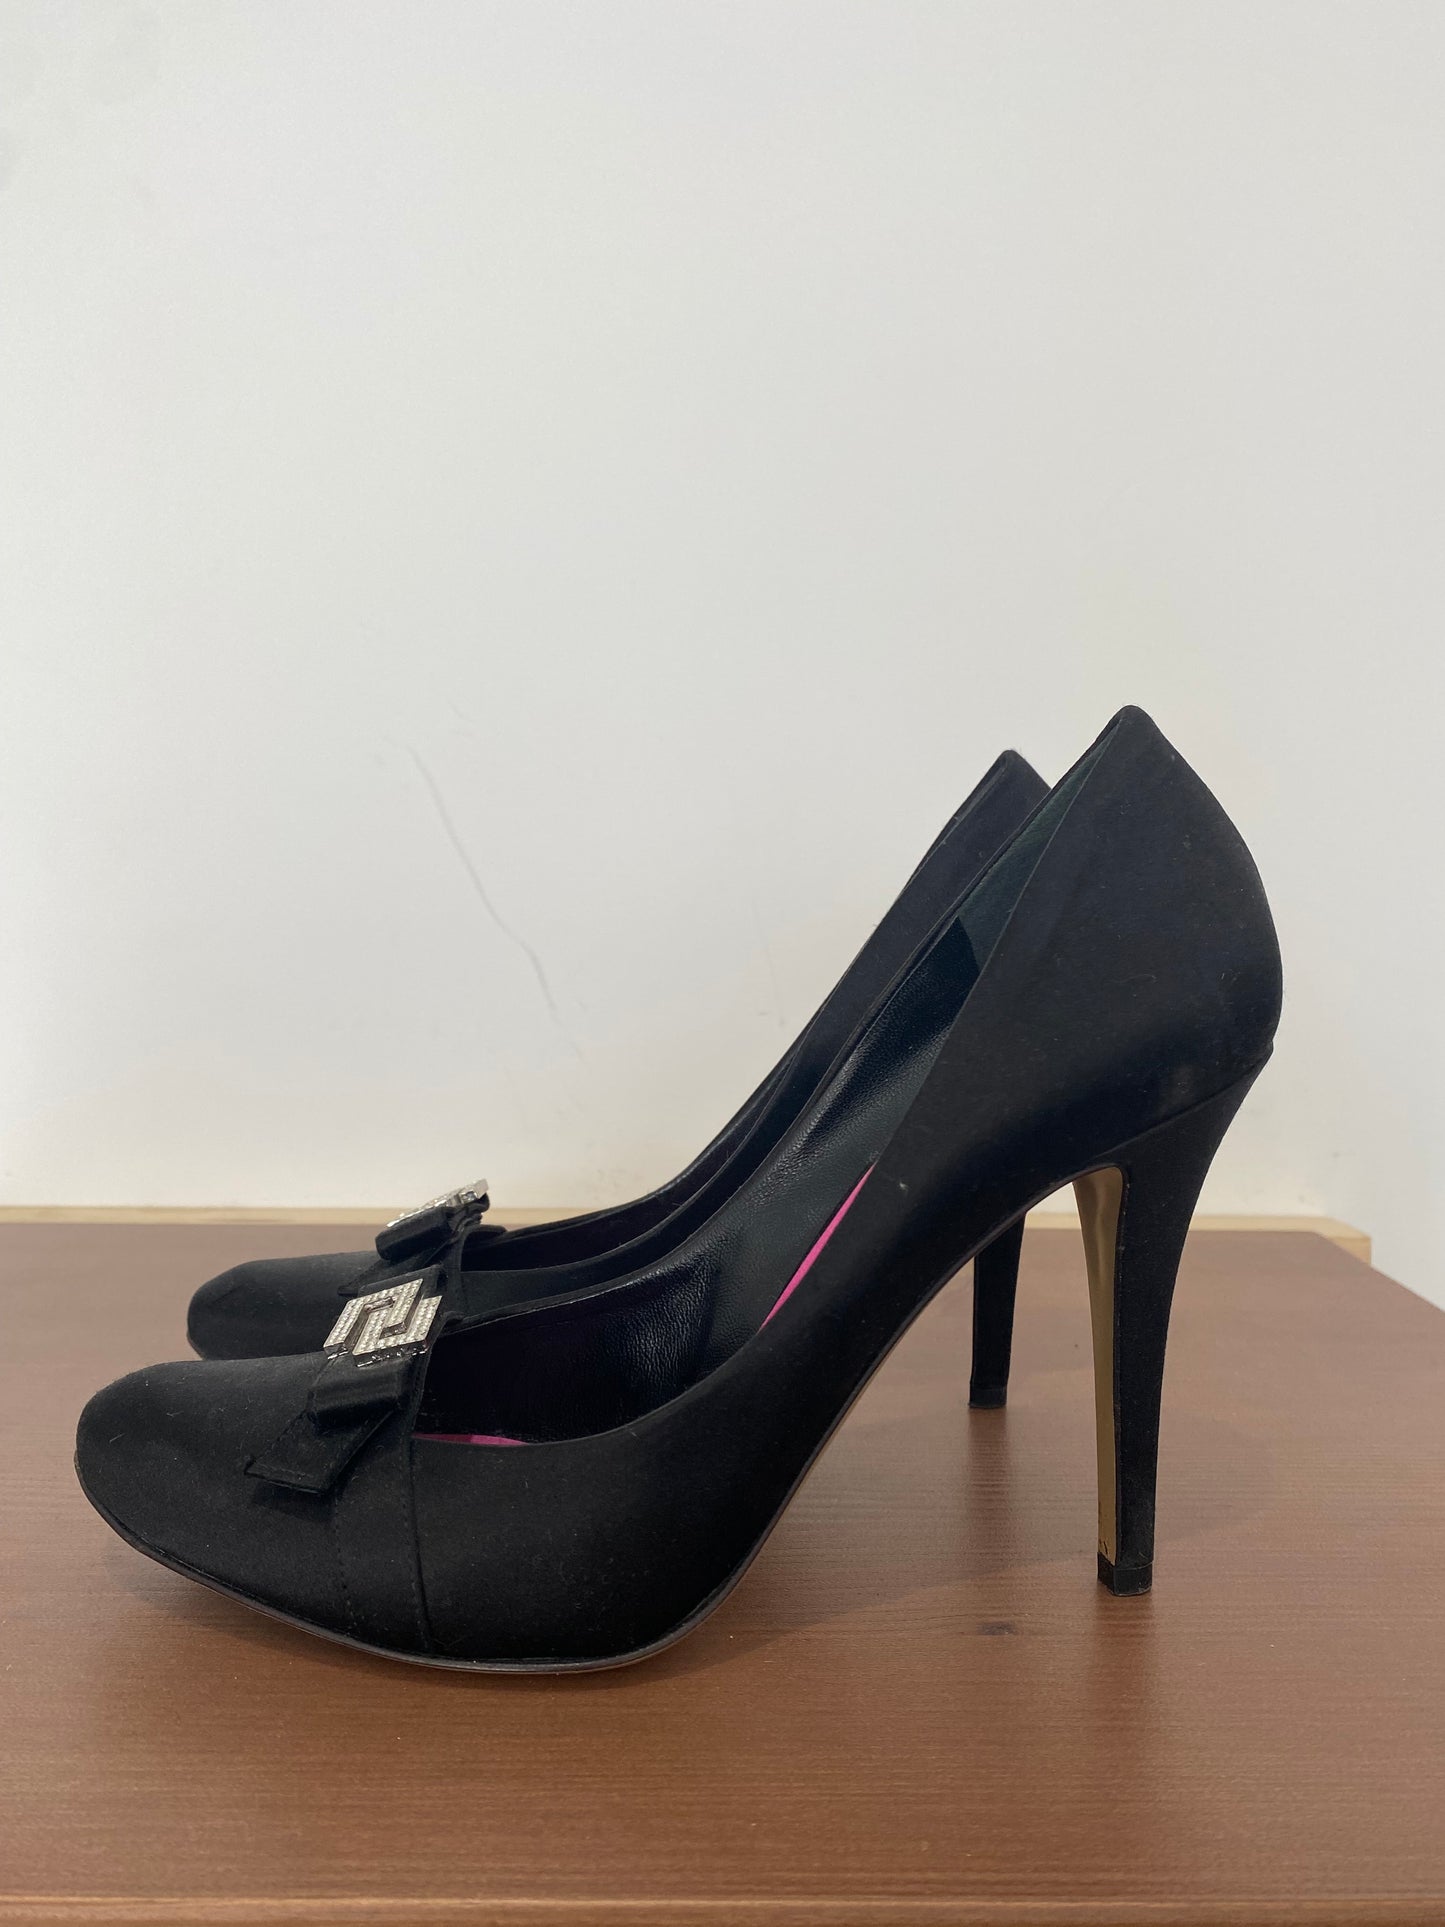 Karen Millen Black Fabric Shoes with Diamanté Detailing Size 4